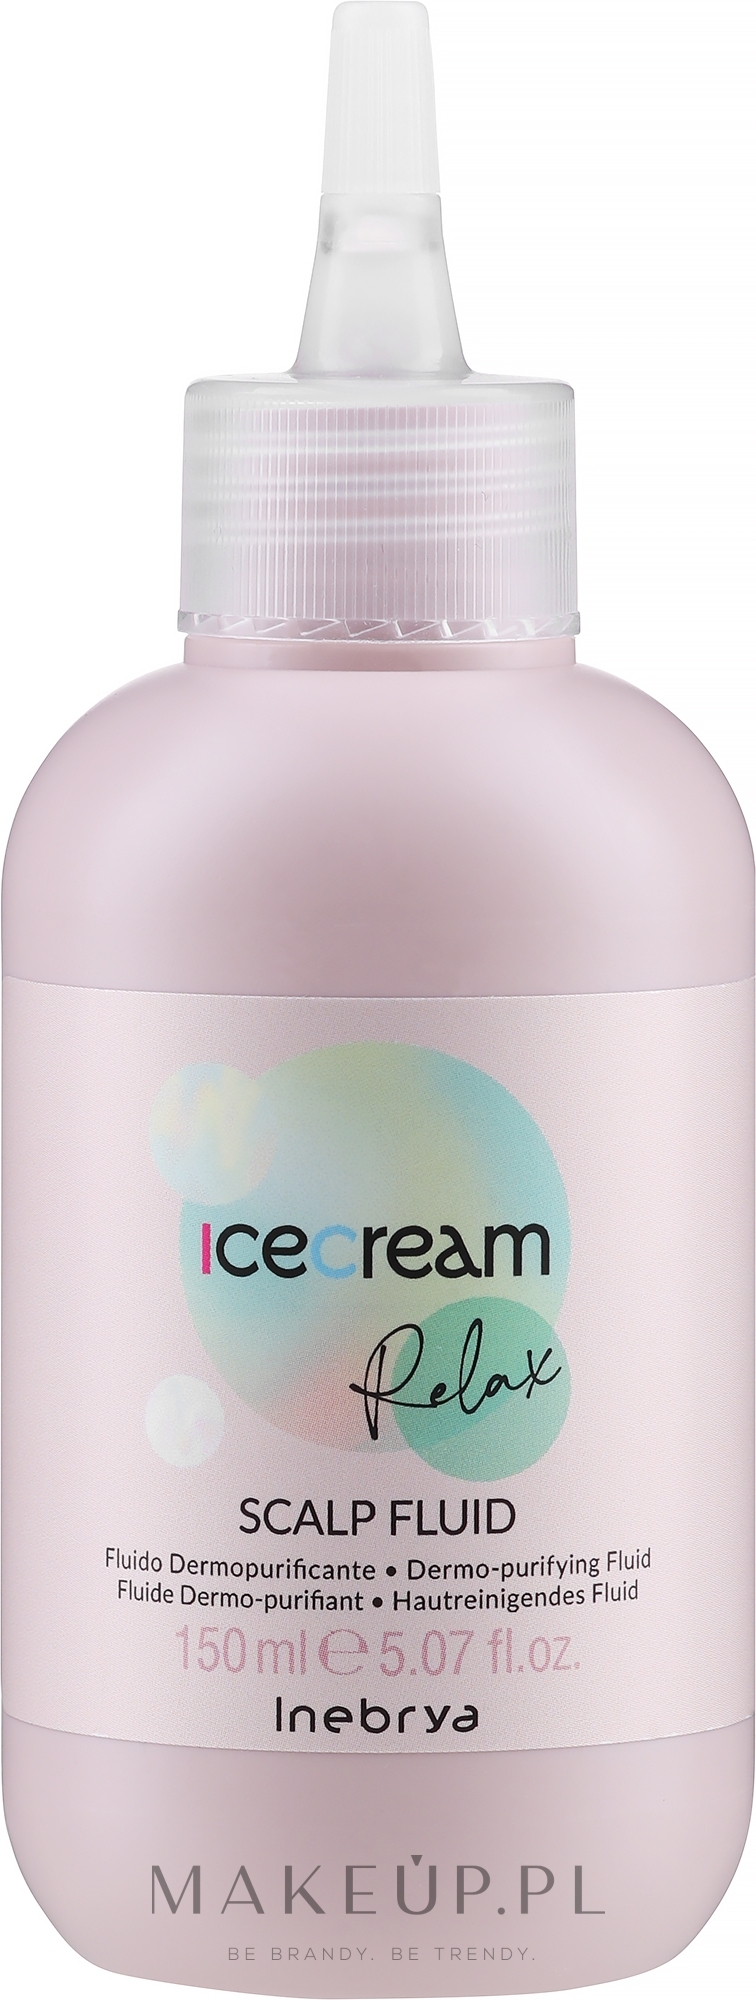 Oczyszczający fluid tonizujący skórę głowy - Inebrya Ice Cream Relax Scalp Fluid — Zdjęcie 150 ml